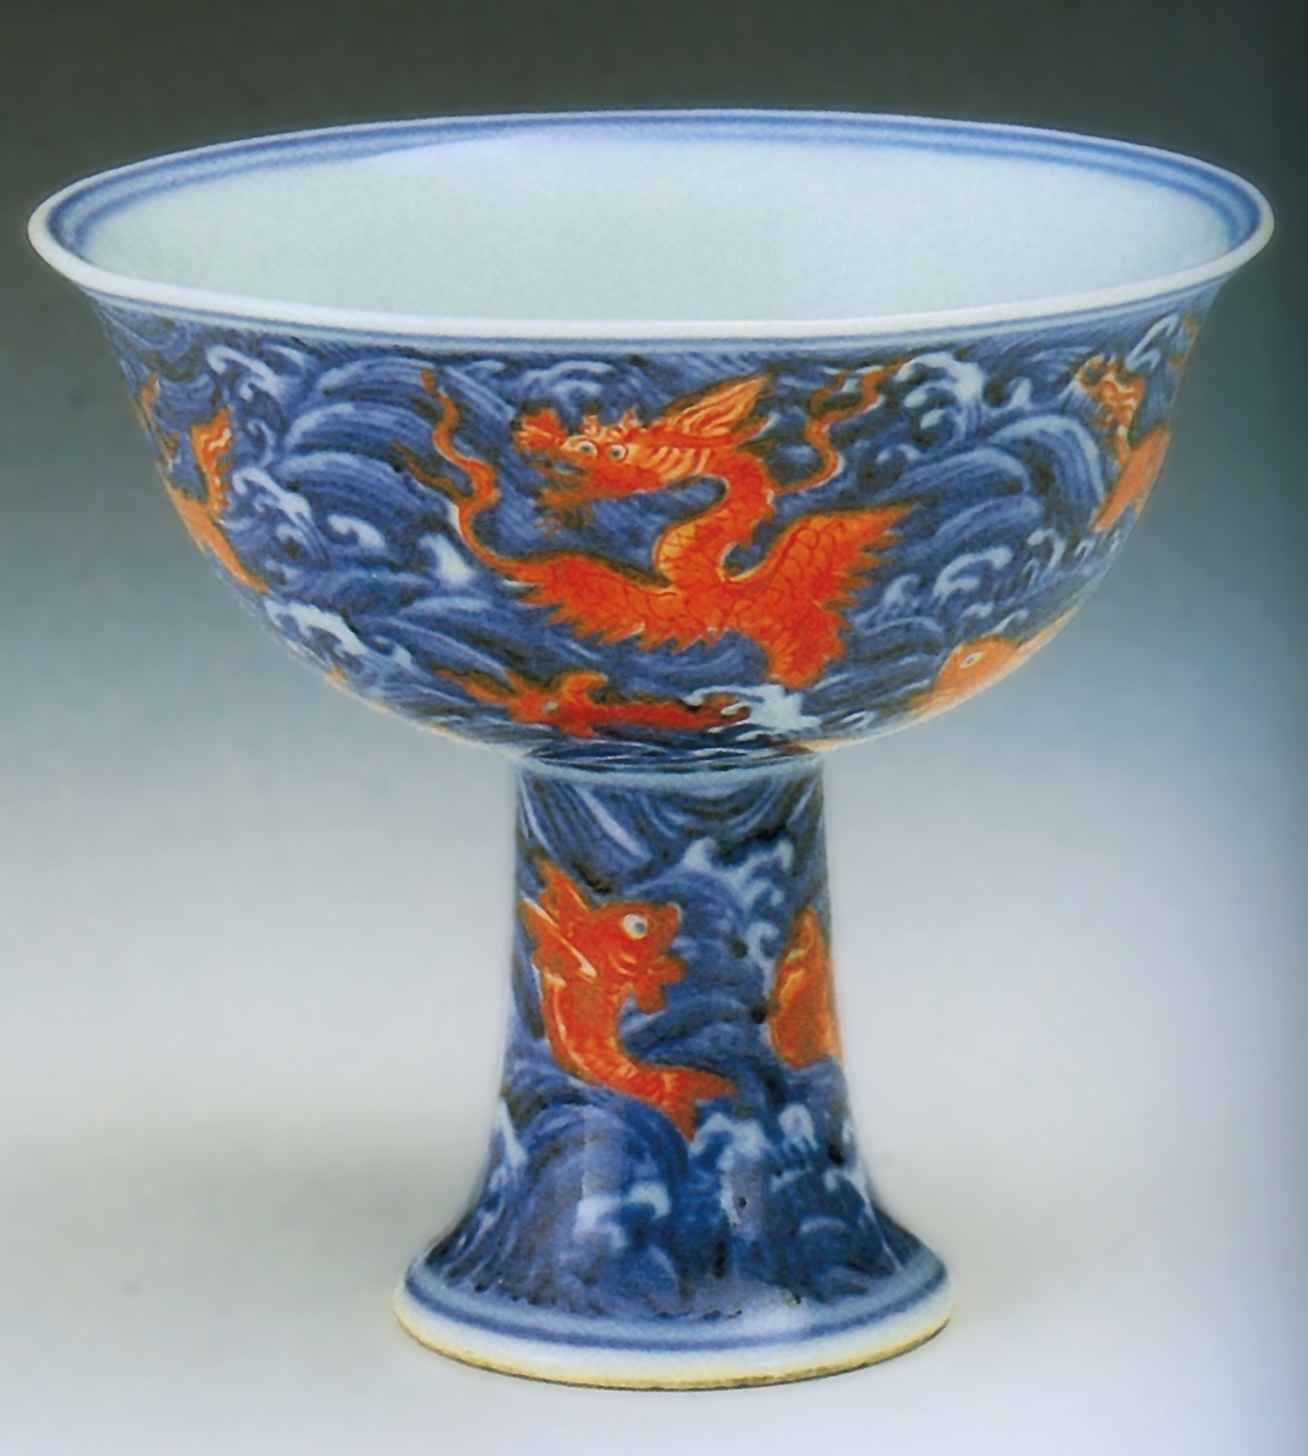 Чаша на высокой ножке с изображением морских животных и драконов в волнах <br>Вторая четверть 15 века <br>Фарфор, глазурь <br>Шанхай, Городской музей